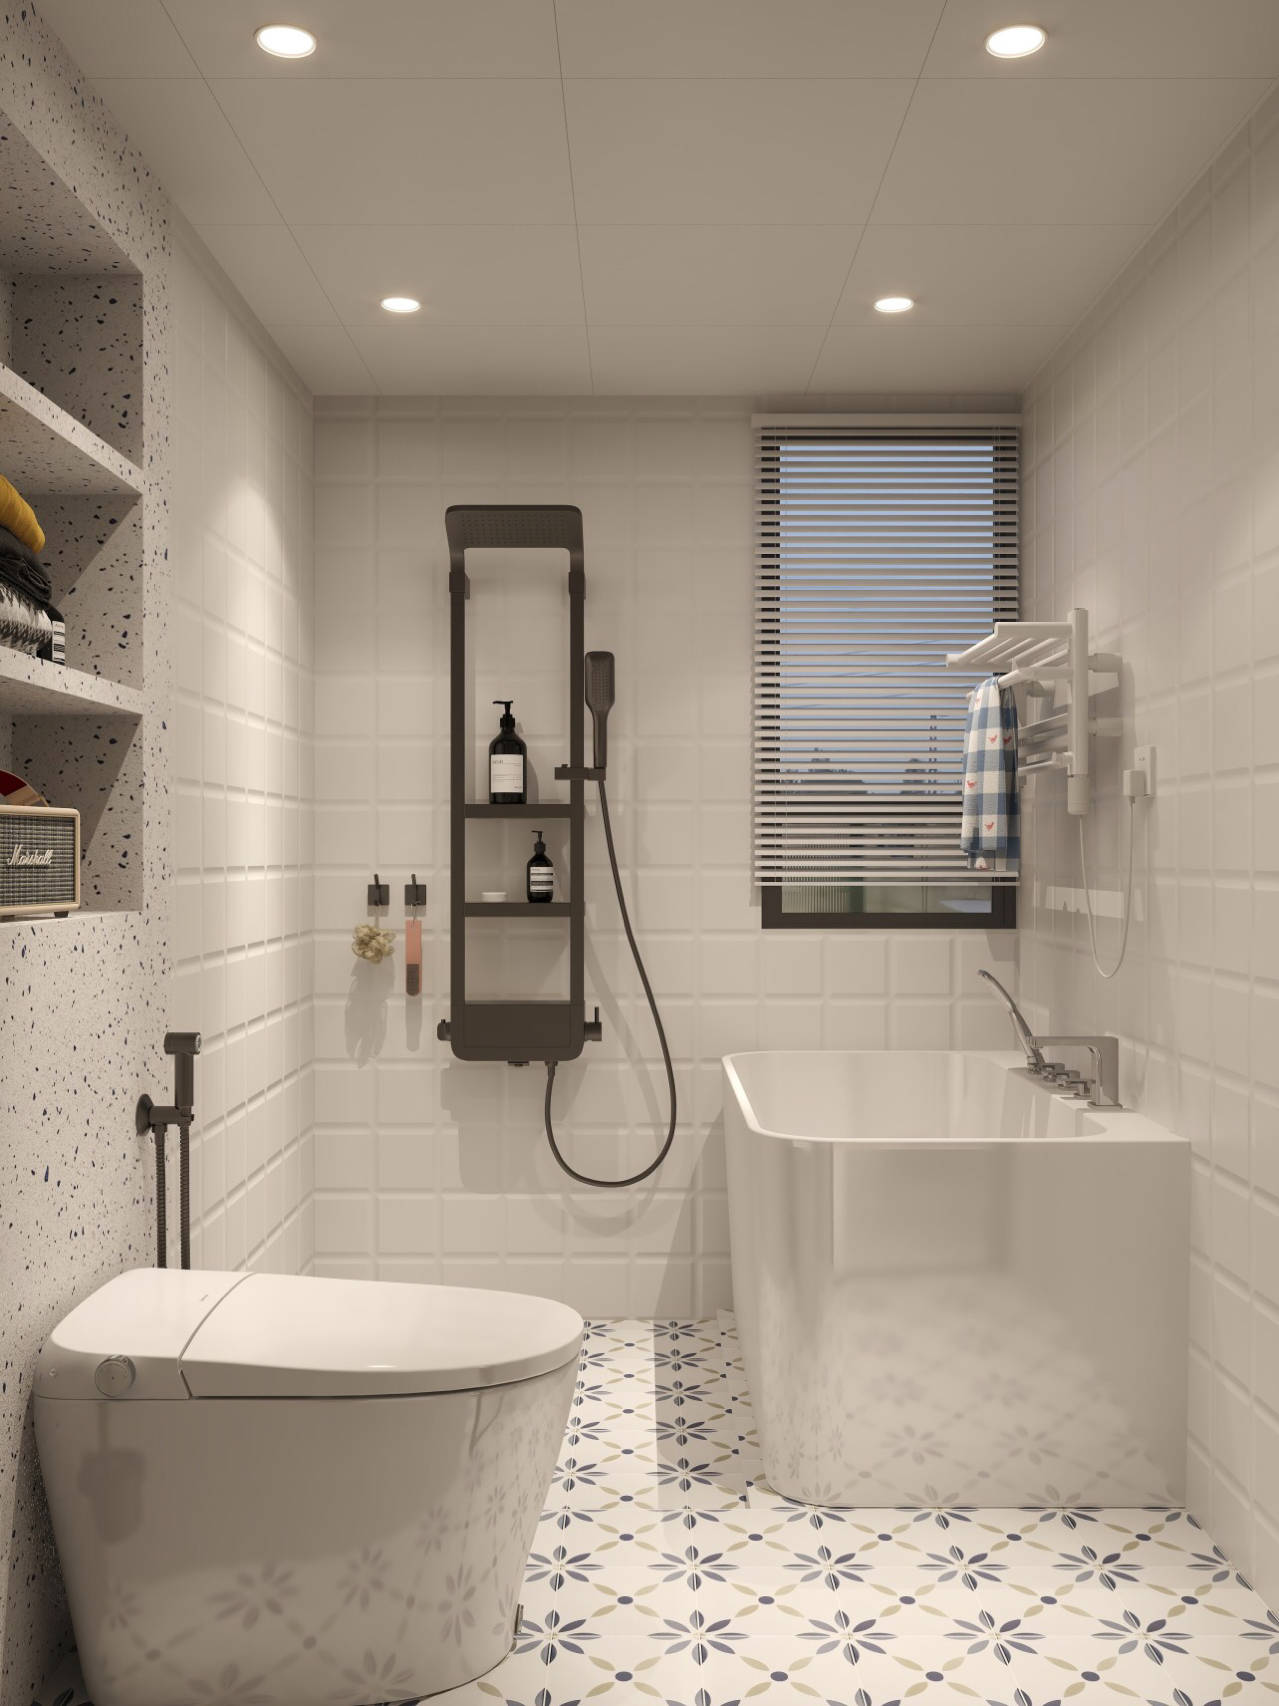 浴室装修设计,教你怎么布置一个简约温馨,有质感的卫生间!